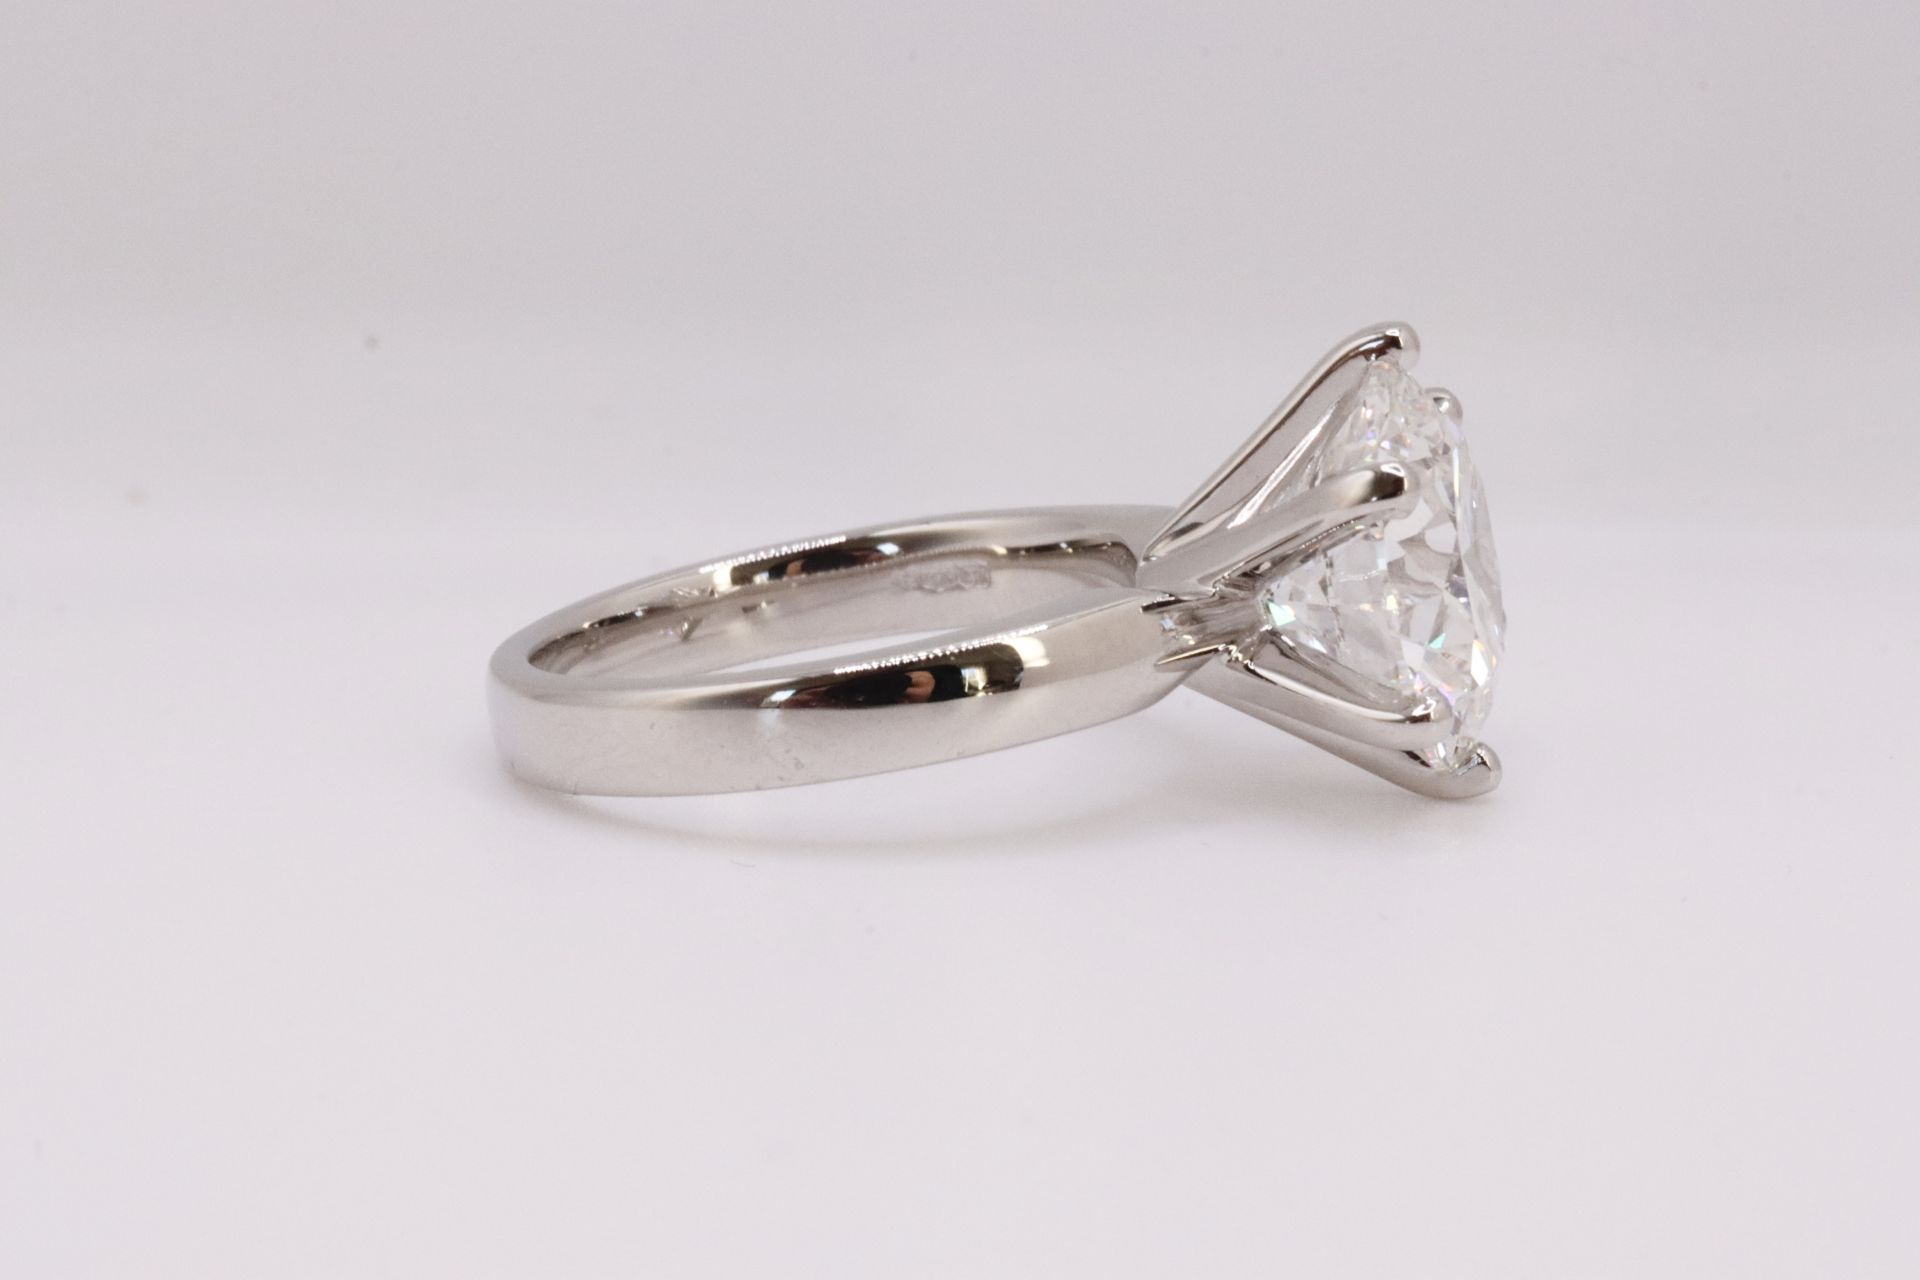 ** ON SALE ** Round brilliant Cut Diamond Platinum Ring 5.00 Carat F Colour VS1 Clarity ID EX EX - Image 4 of 8